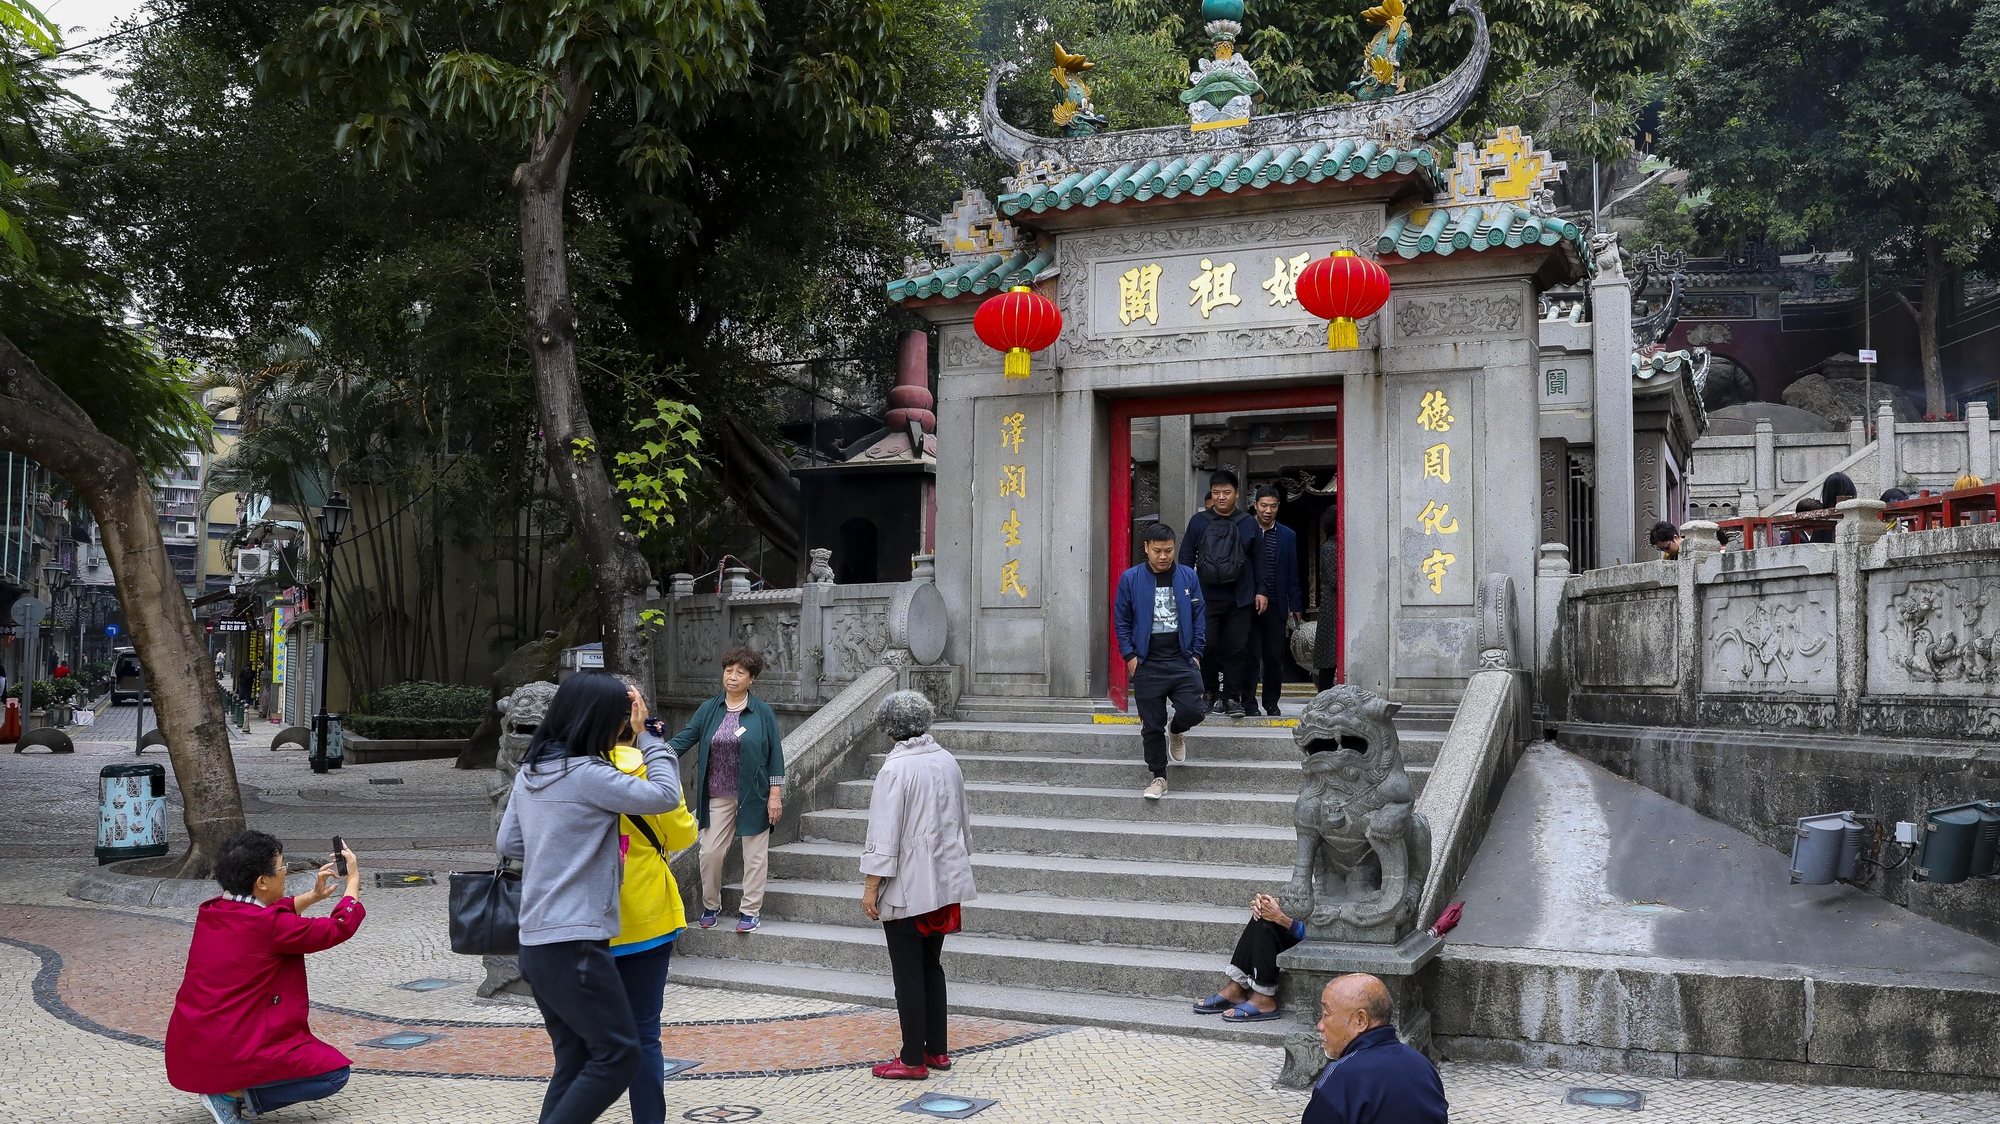 Templo de A-Má, Deusa protetora dos navegantes em Macau, China.17 de dezembro de 2019. JOÃO RELVAS/LUSA